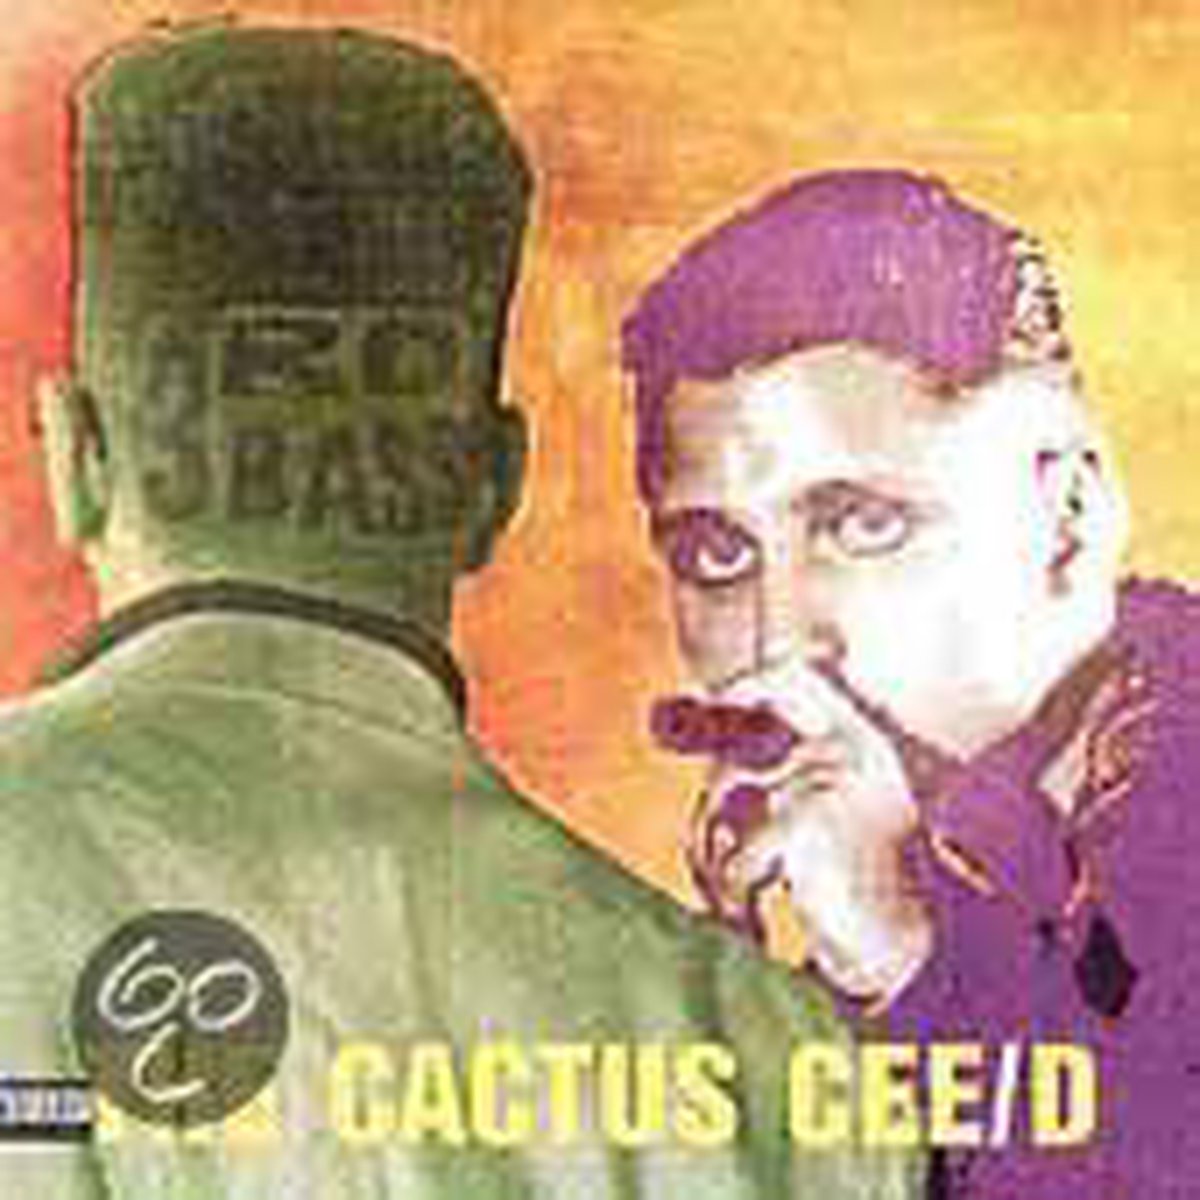 Cactus Album - 3Rd Bass